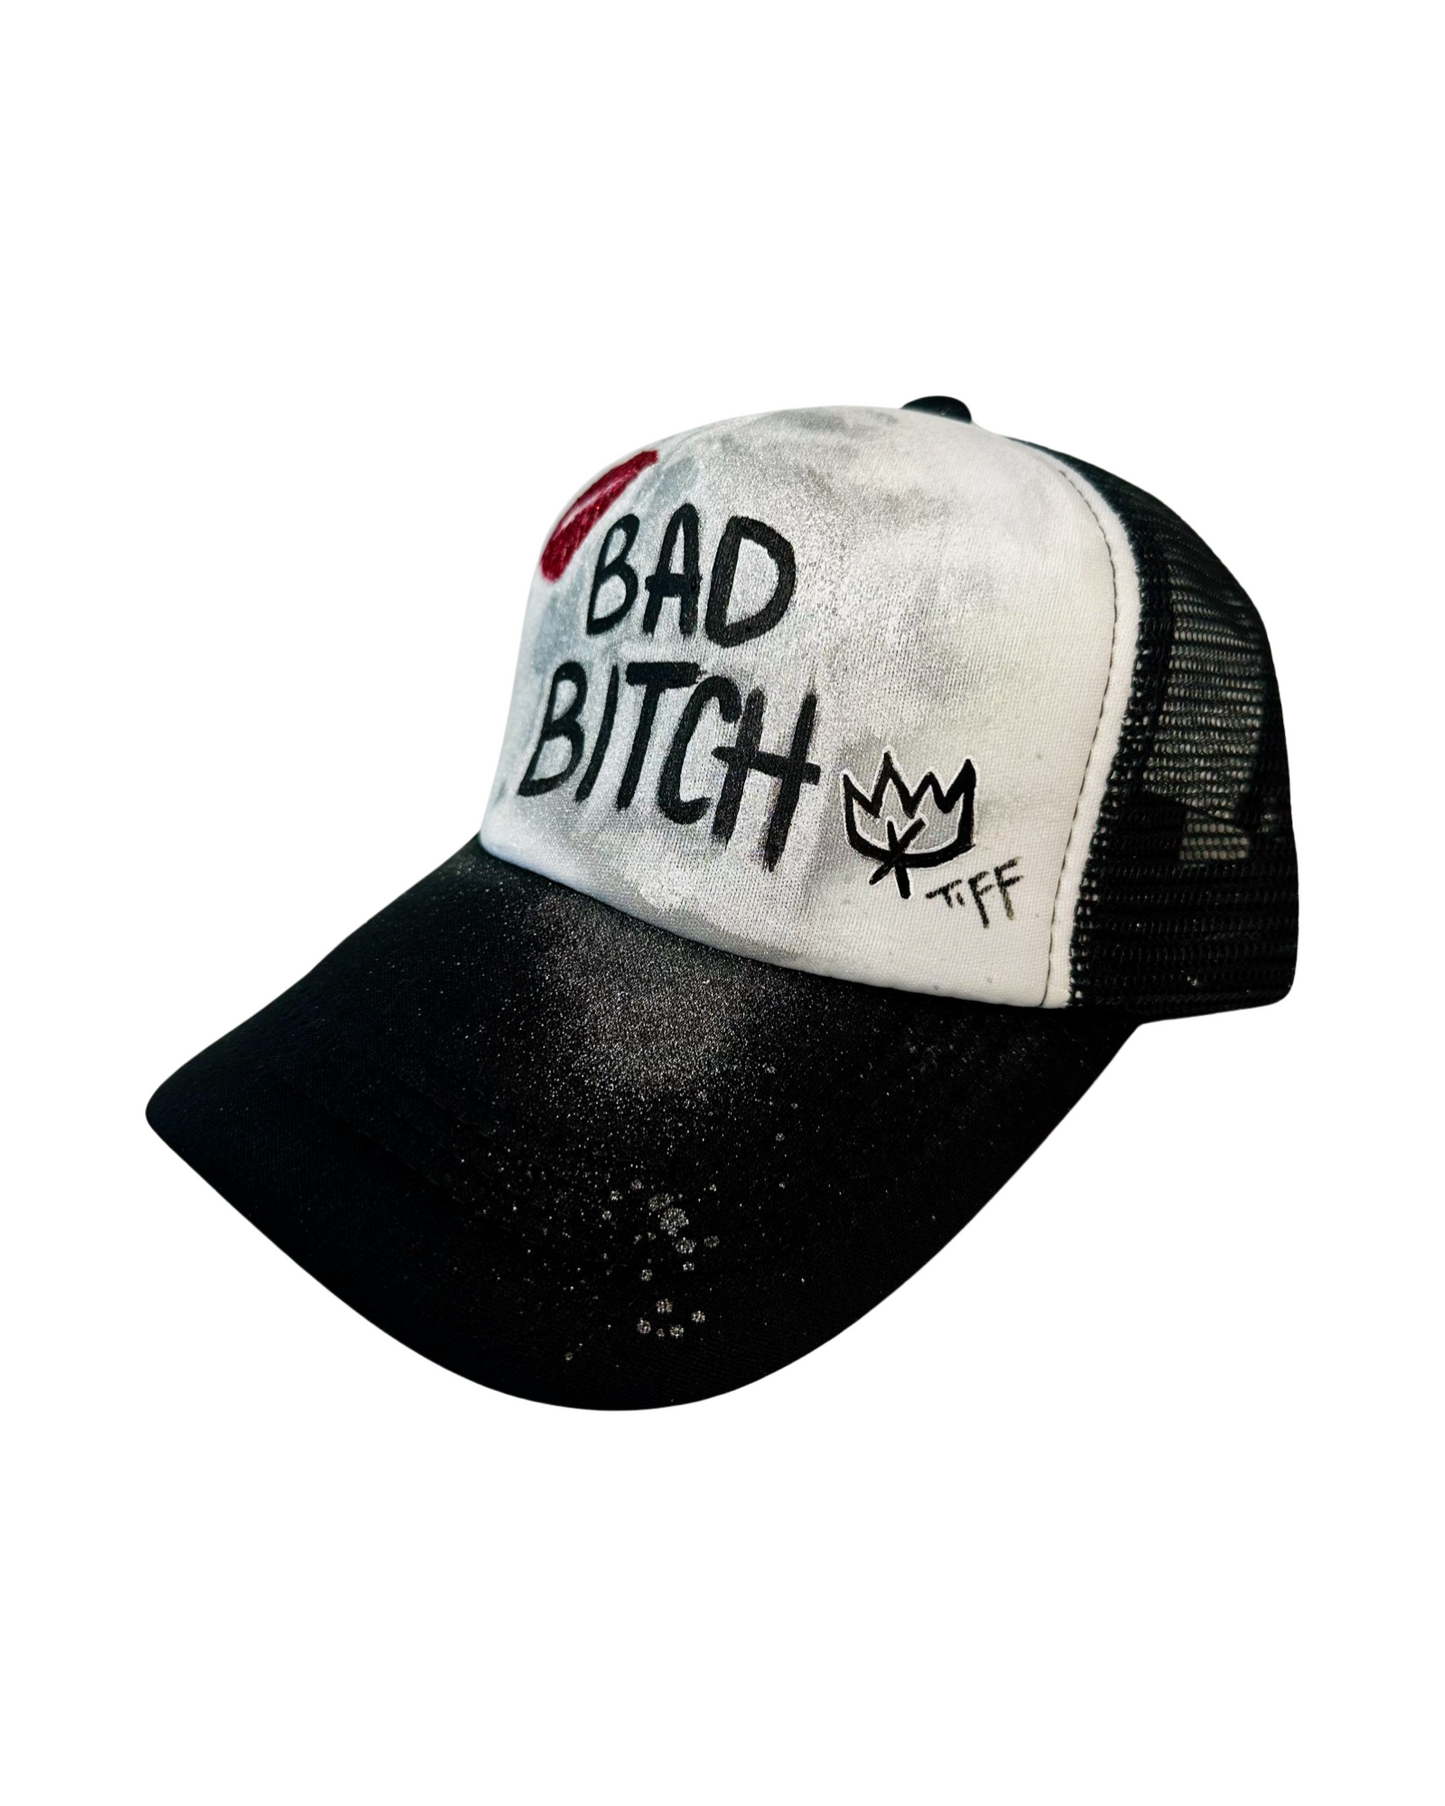 Bad Bitch Foam Trucker Hat